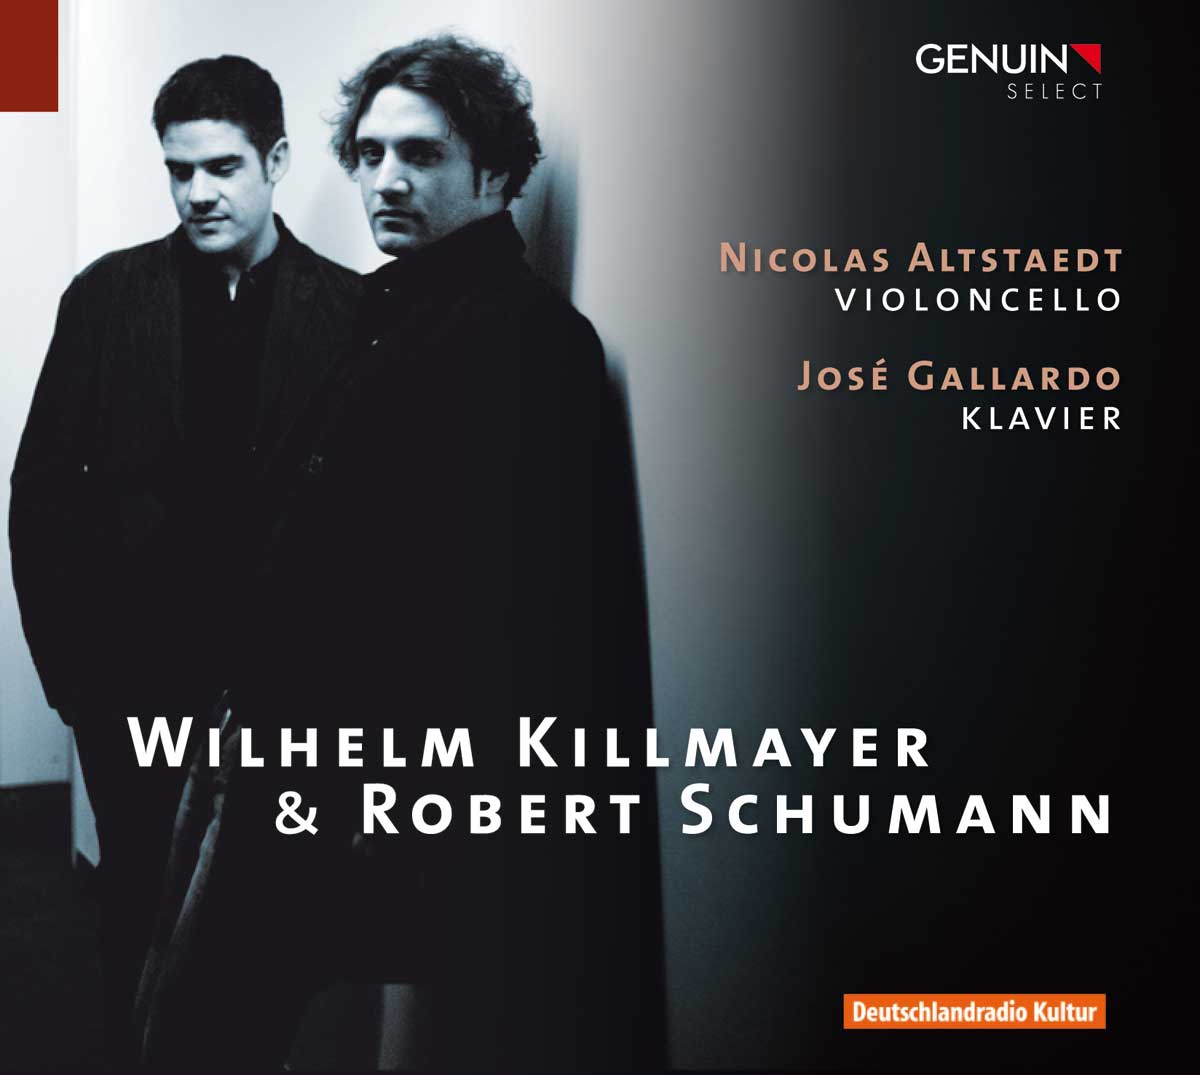 CD album cover 'Wilhelm Killmayer & Robert Schumann' (GEN 10187) with Nicolas Altstaedt, Jos Gallardo